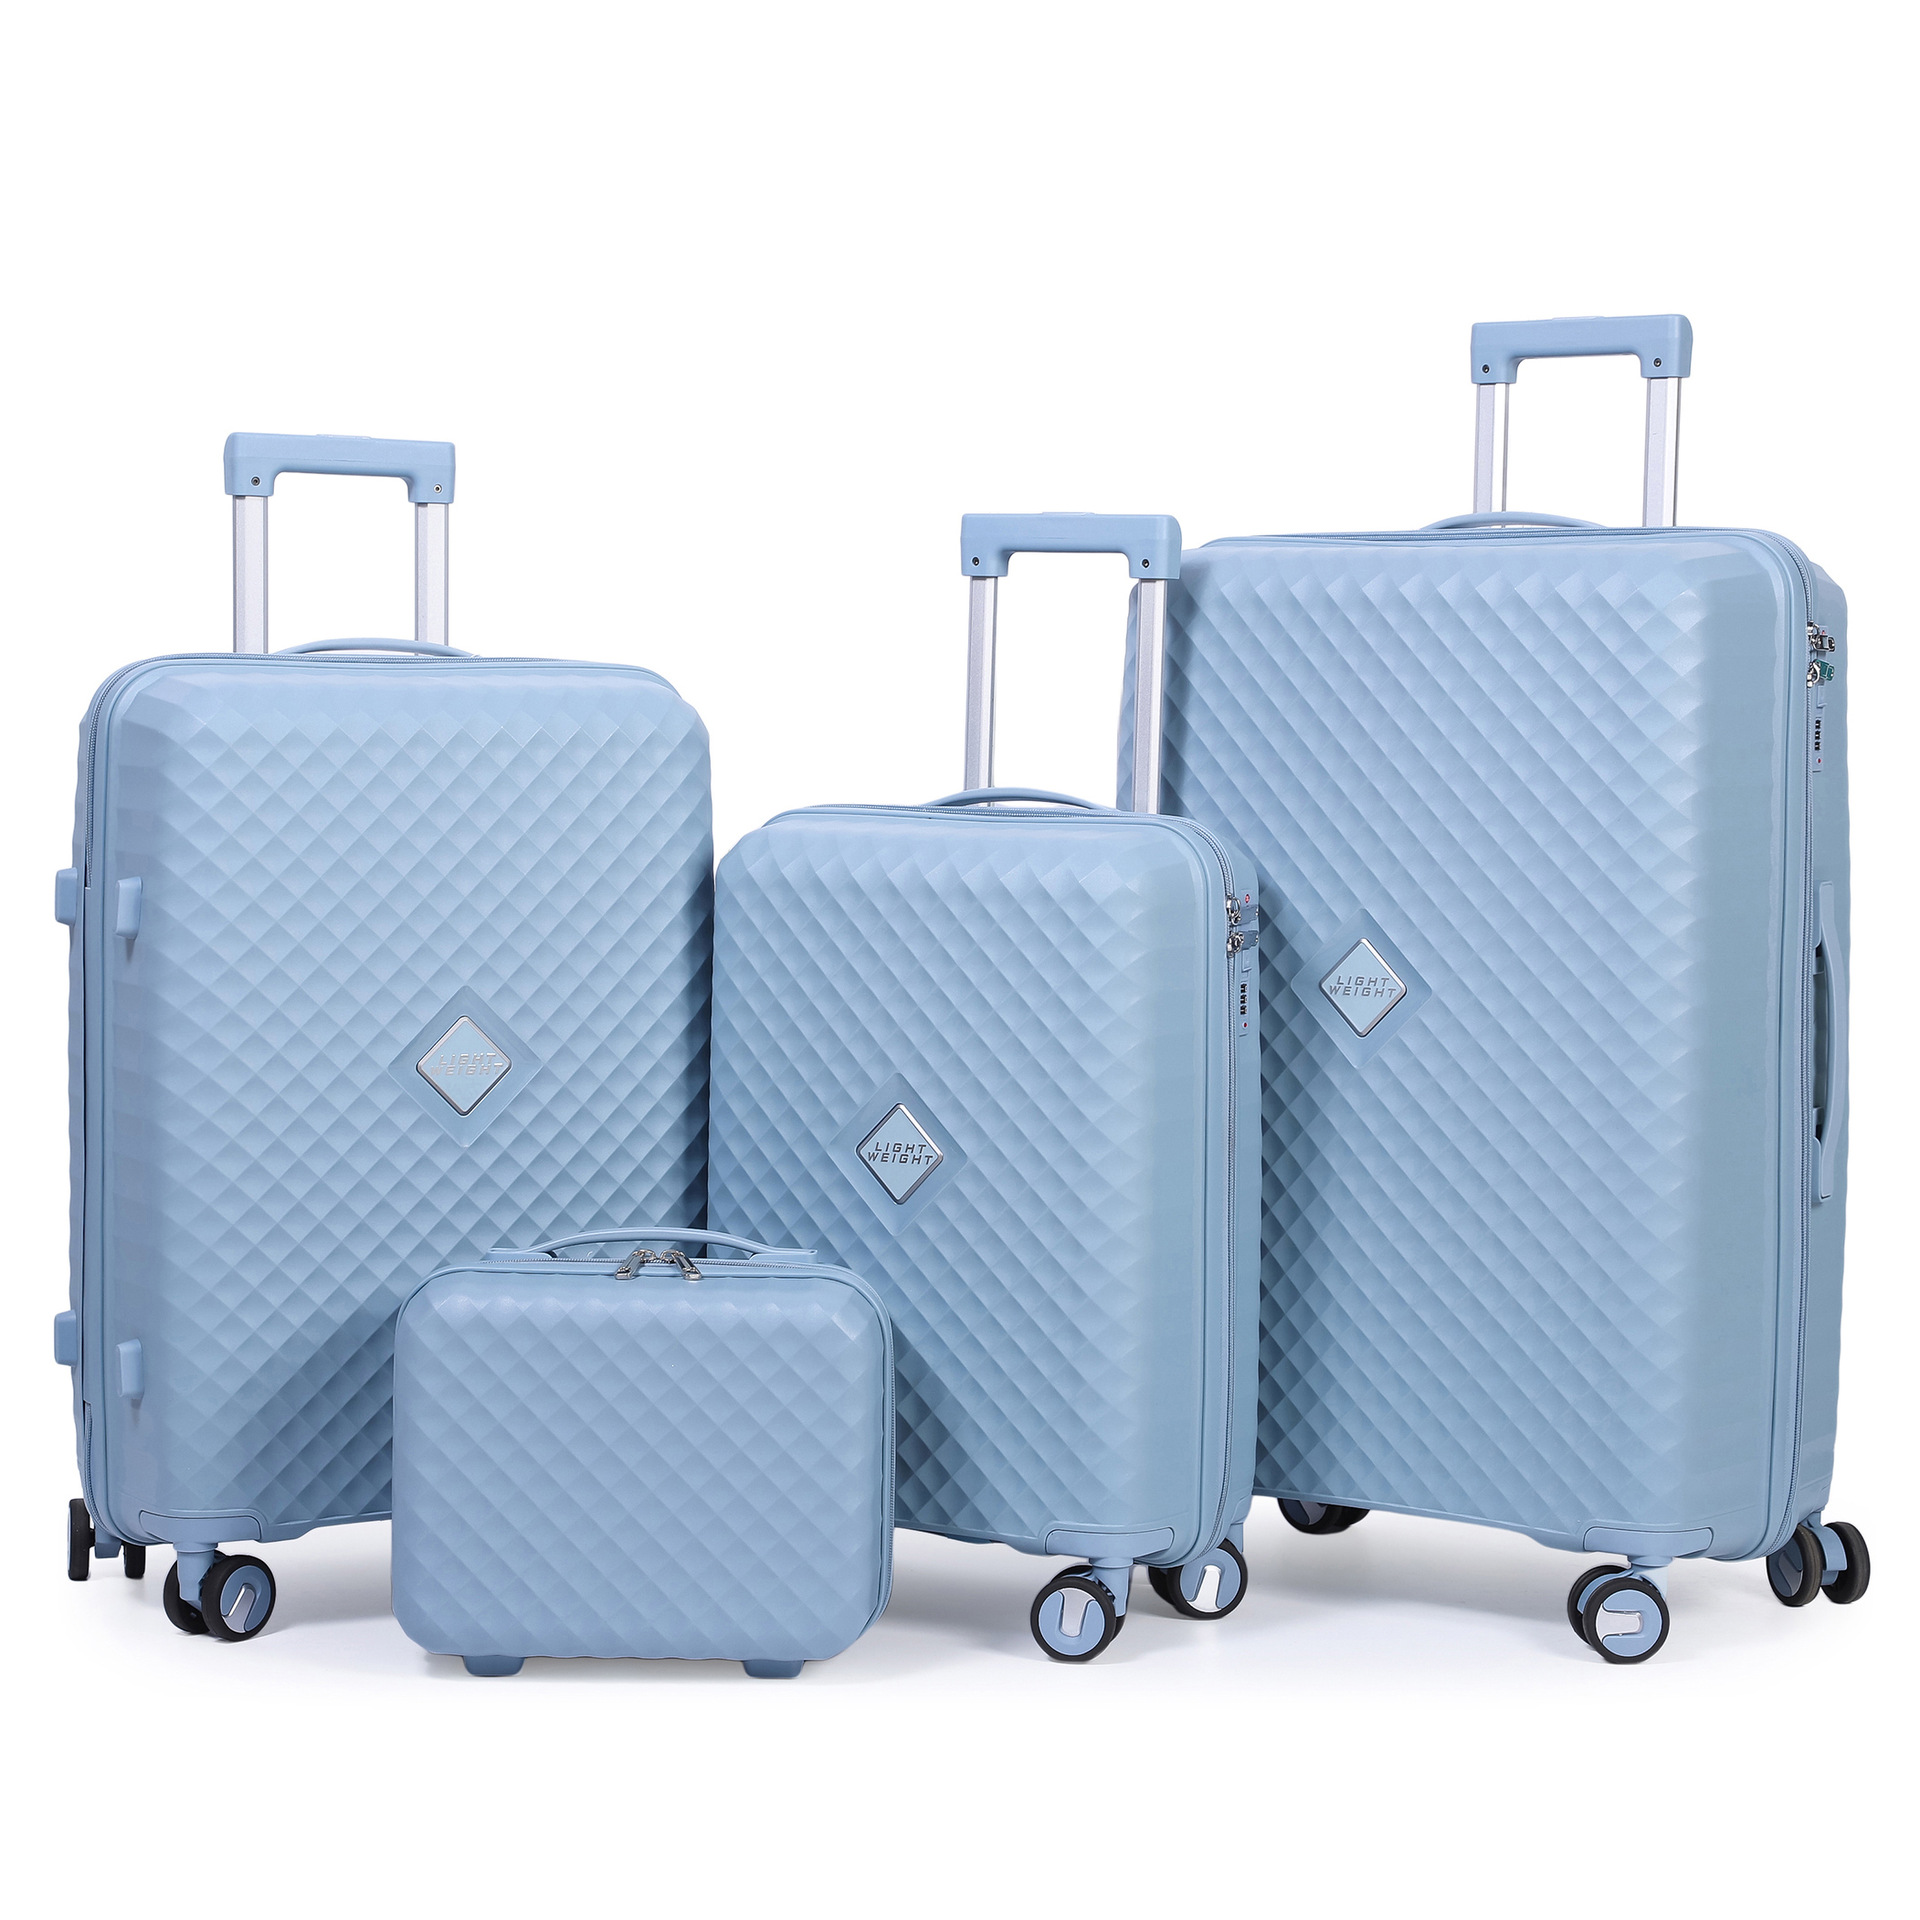 Pp Luggage Factory Travel Box Bag Customized Logo Suitcase